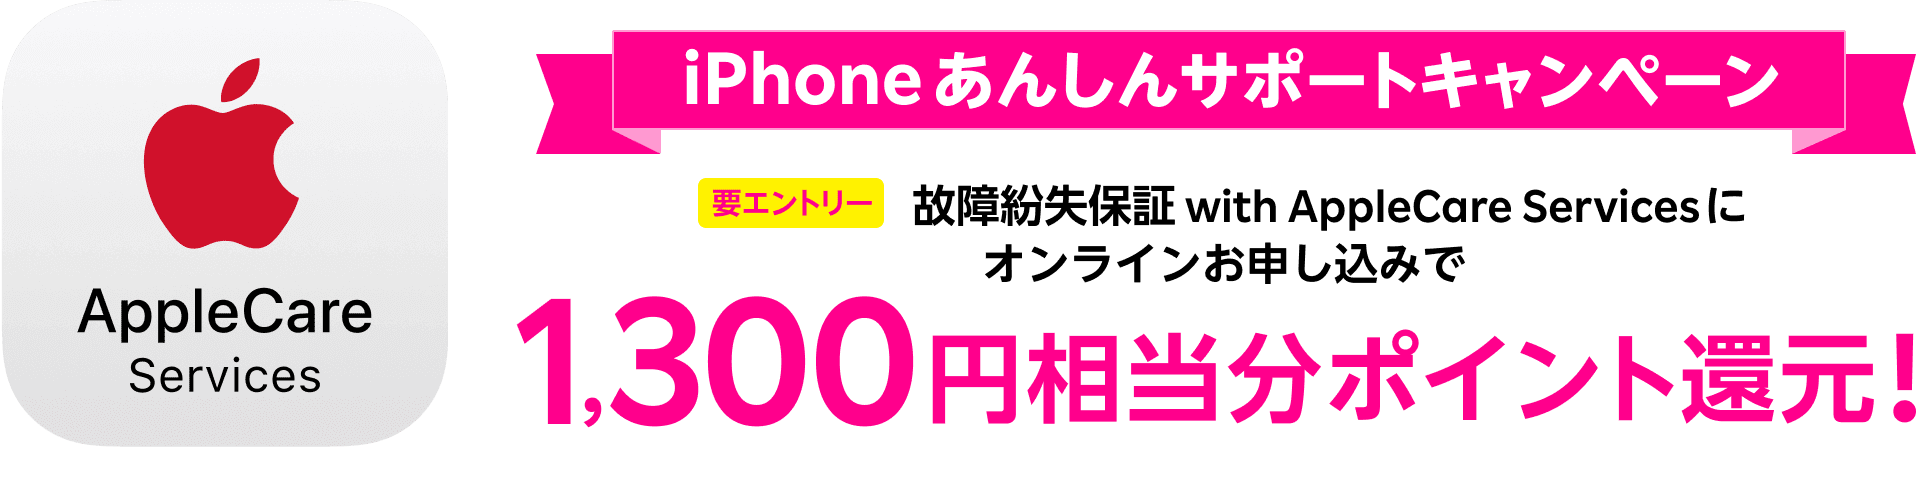 iPhoneあんしんサポート1,300円相当ポイント還元キャンペーン